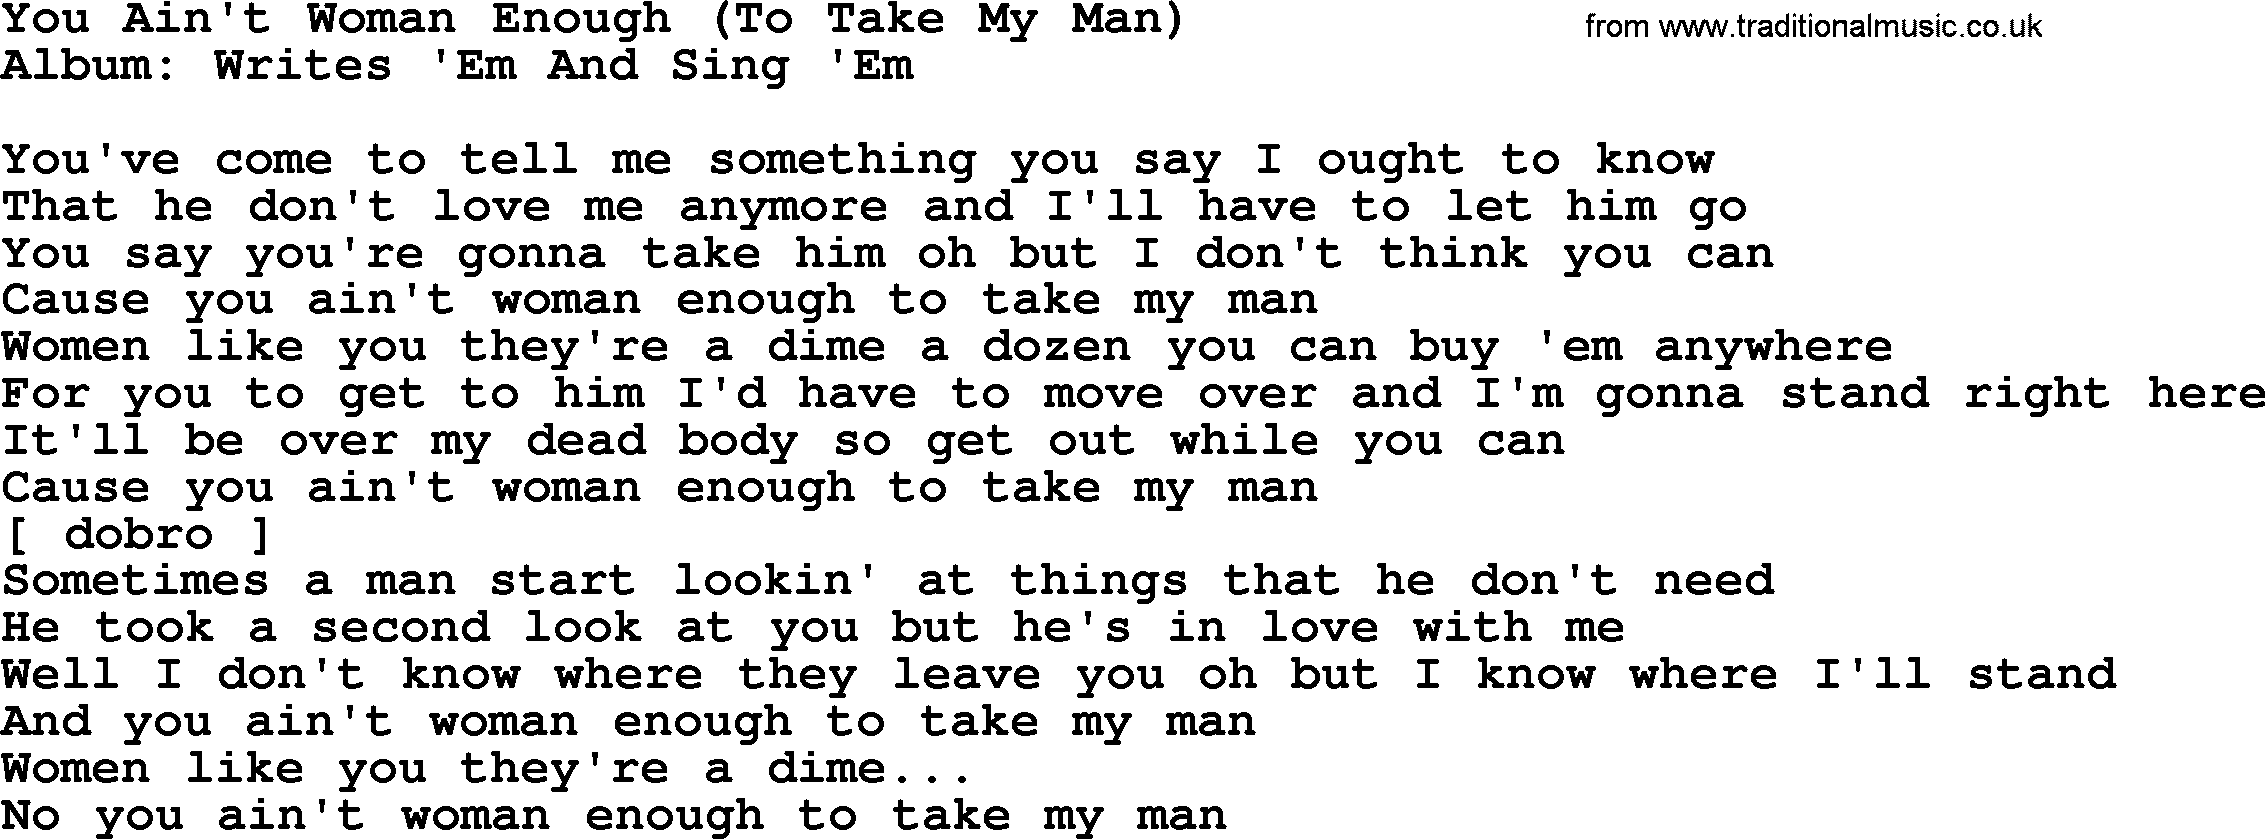 Loretta Lynn song: You Ain't Woman Enough (To Take My Man) lyrics